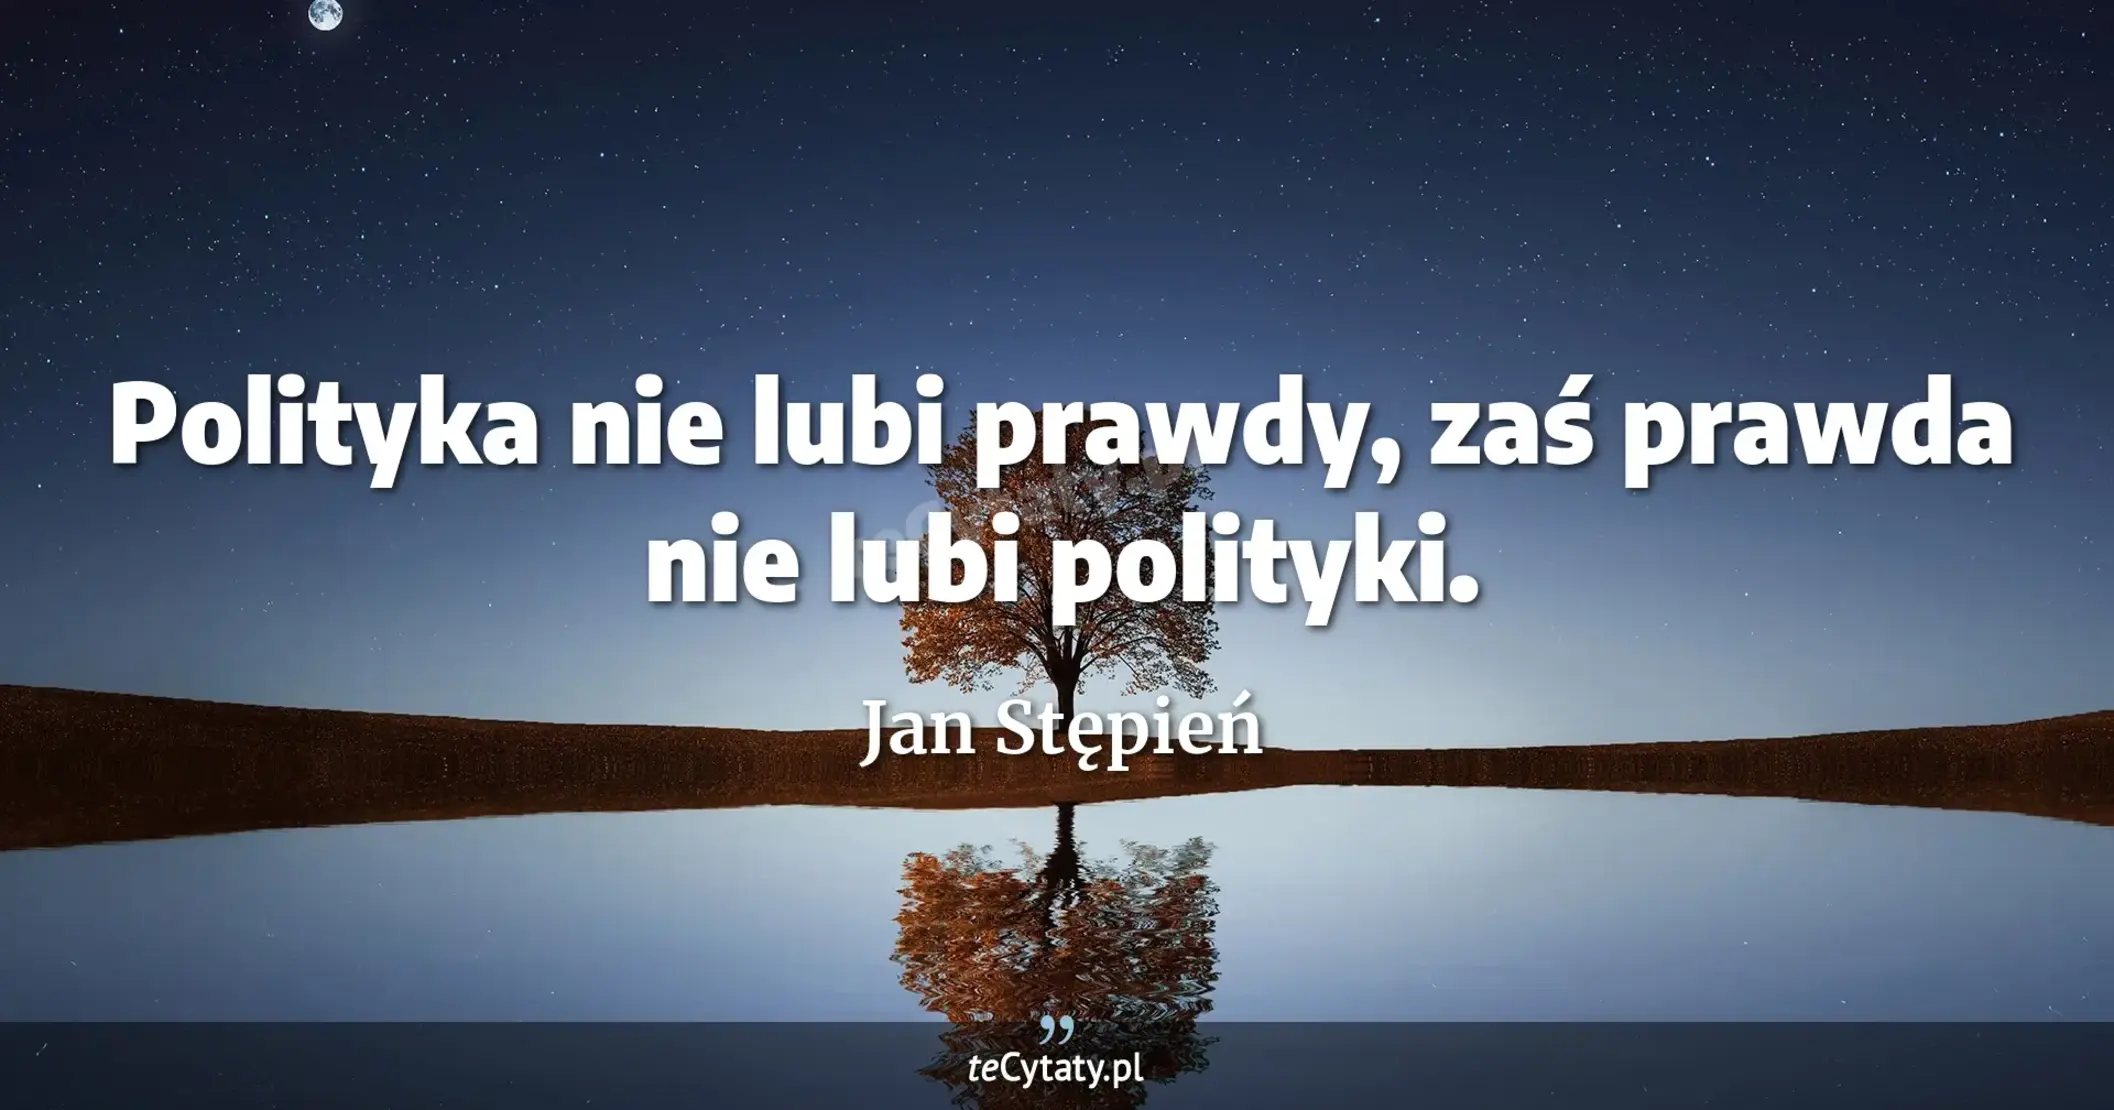 Polityka nie lubi prawdy, zaś prawda nie lubi polityki. - Jan Stępień